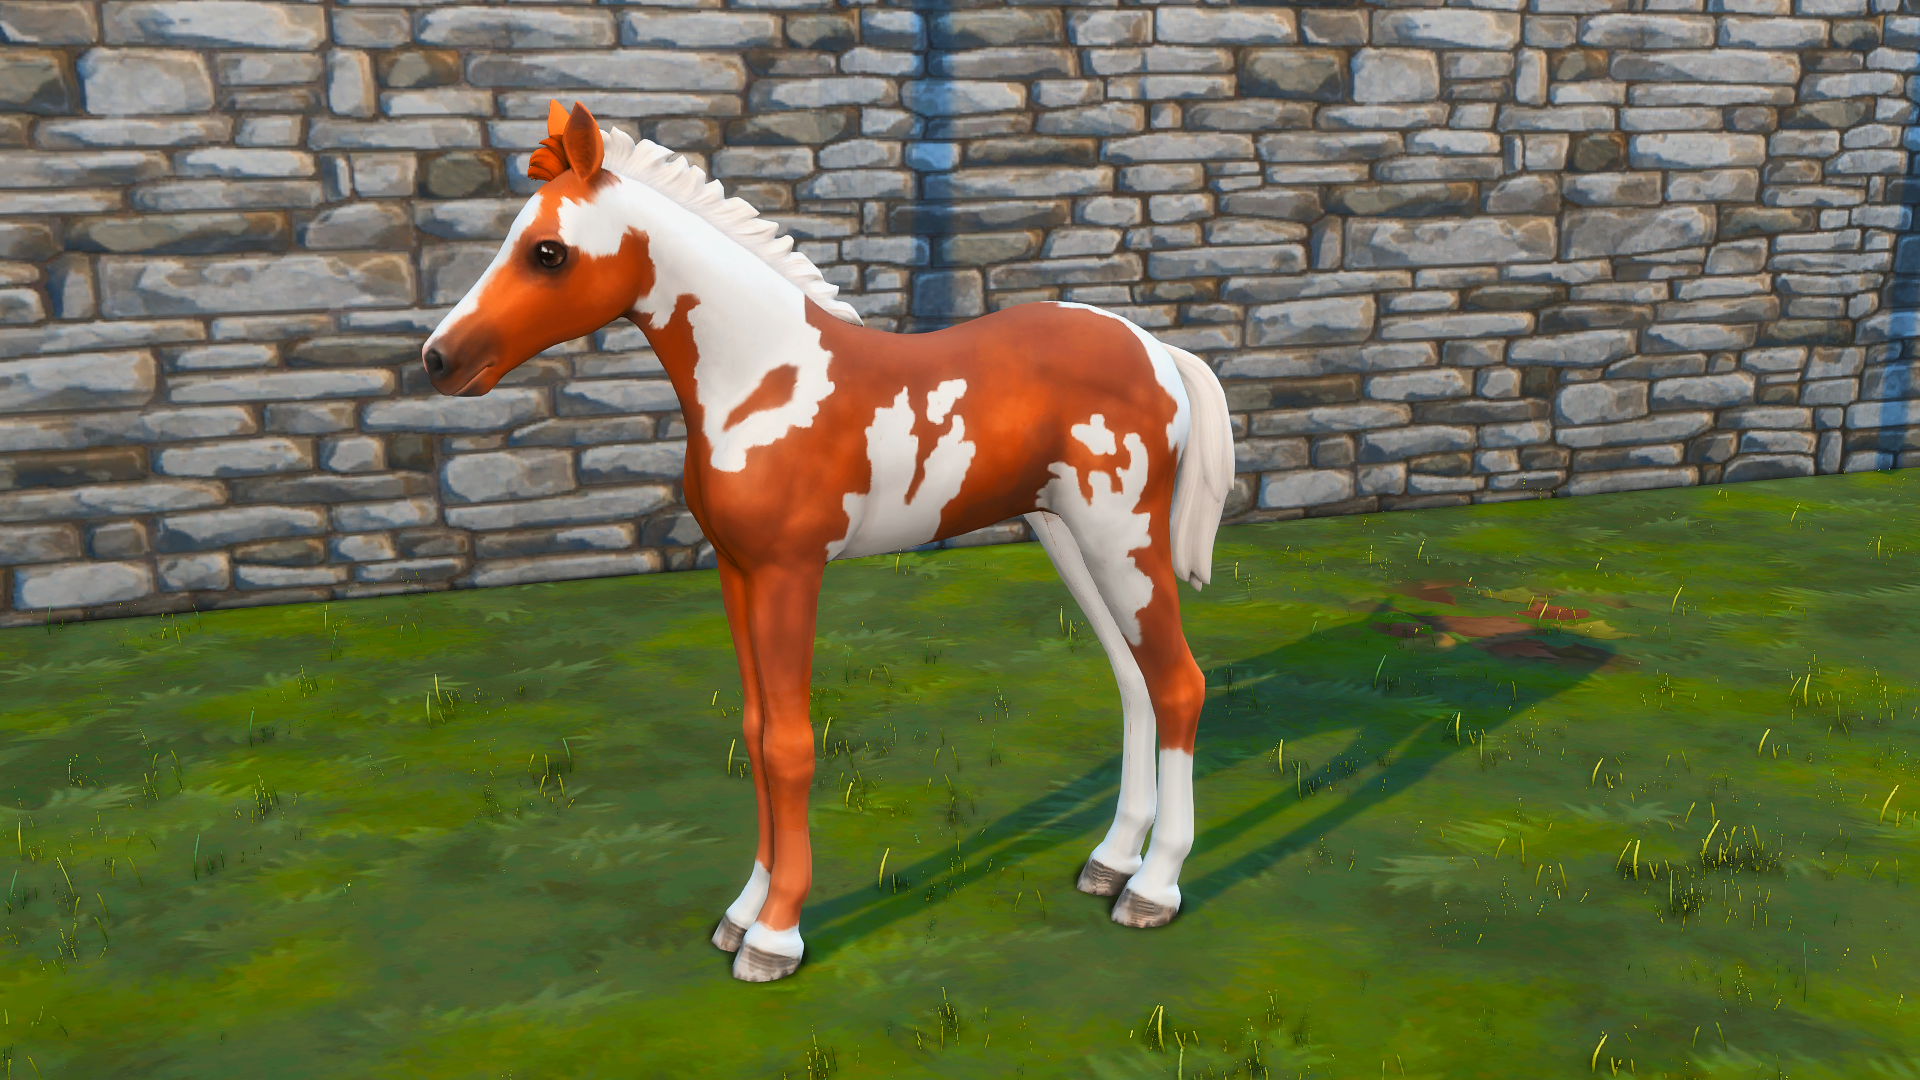 Foal